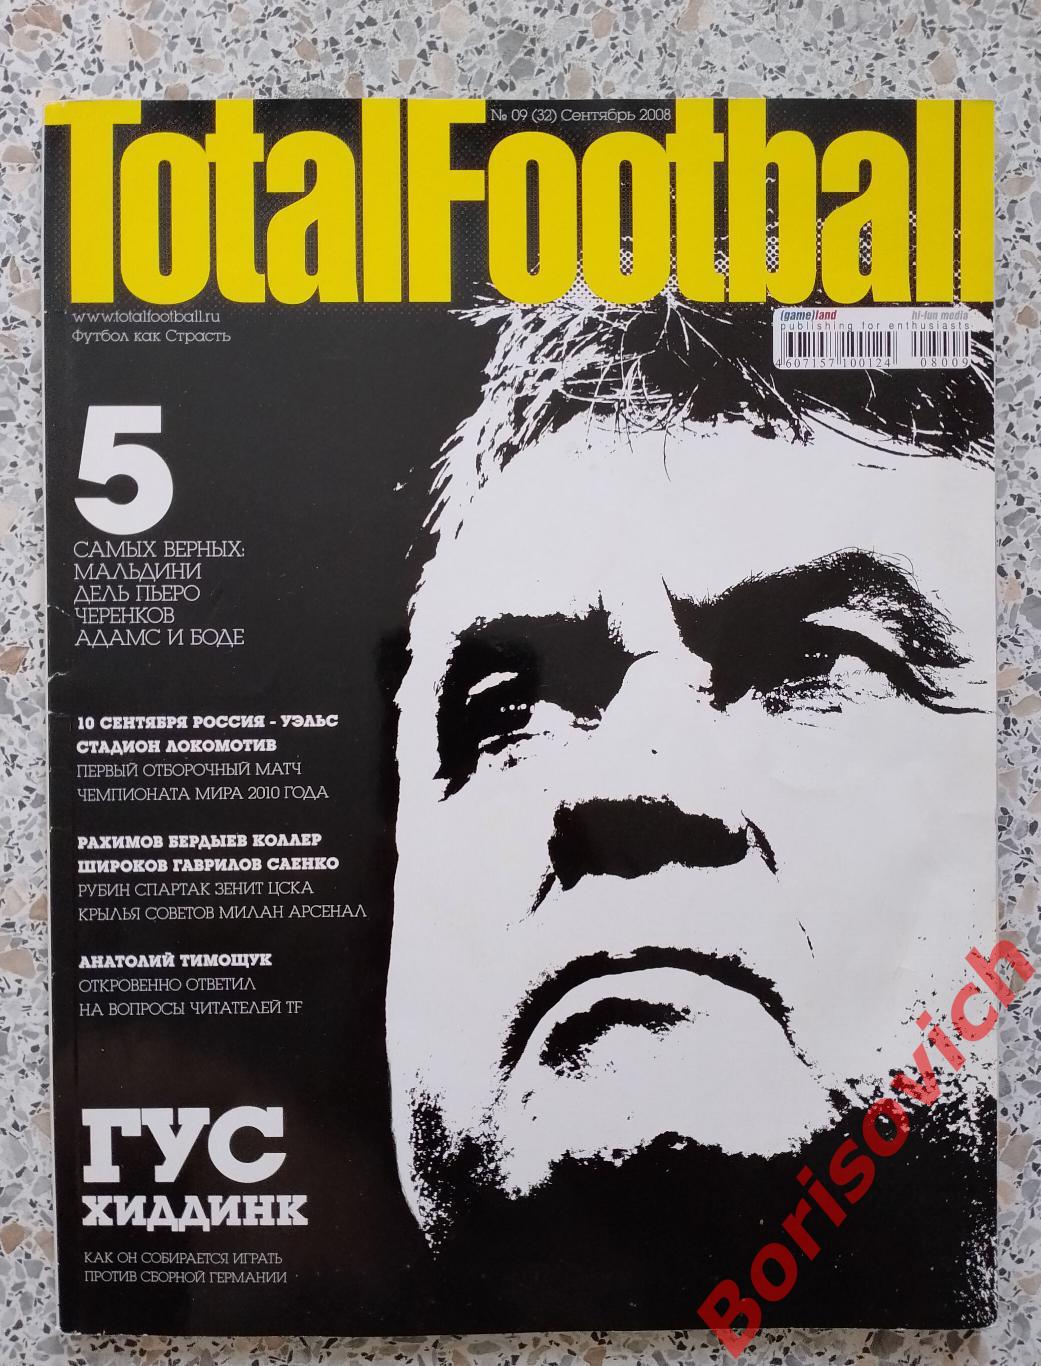 Журнал Totalfootball N 9 Сентябрь 2008 г